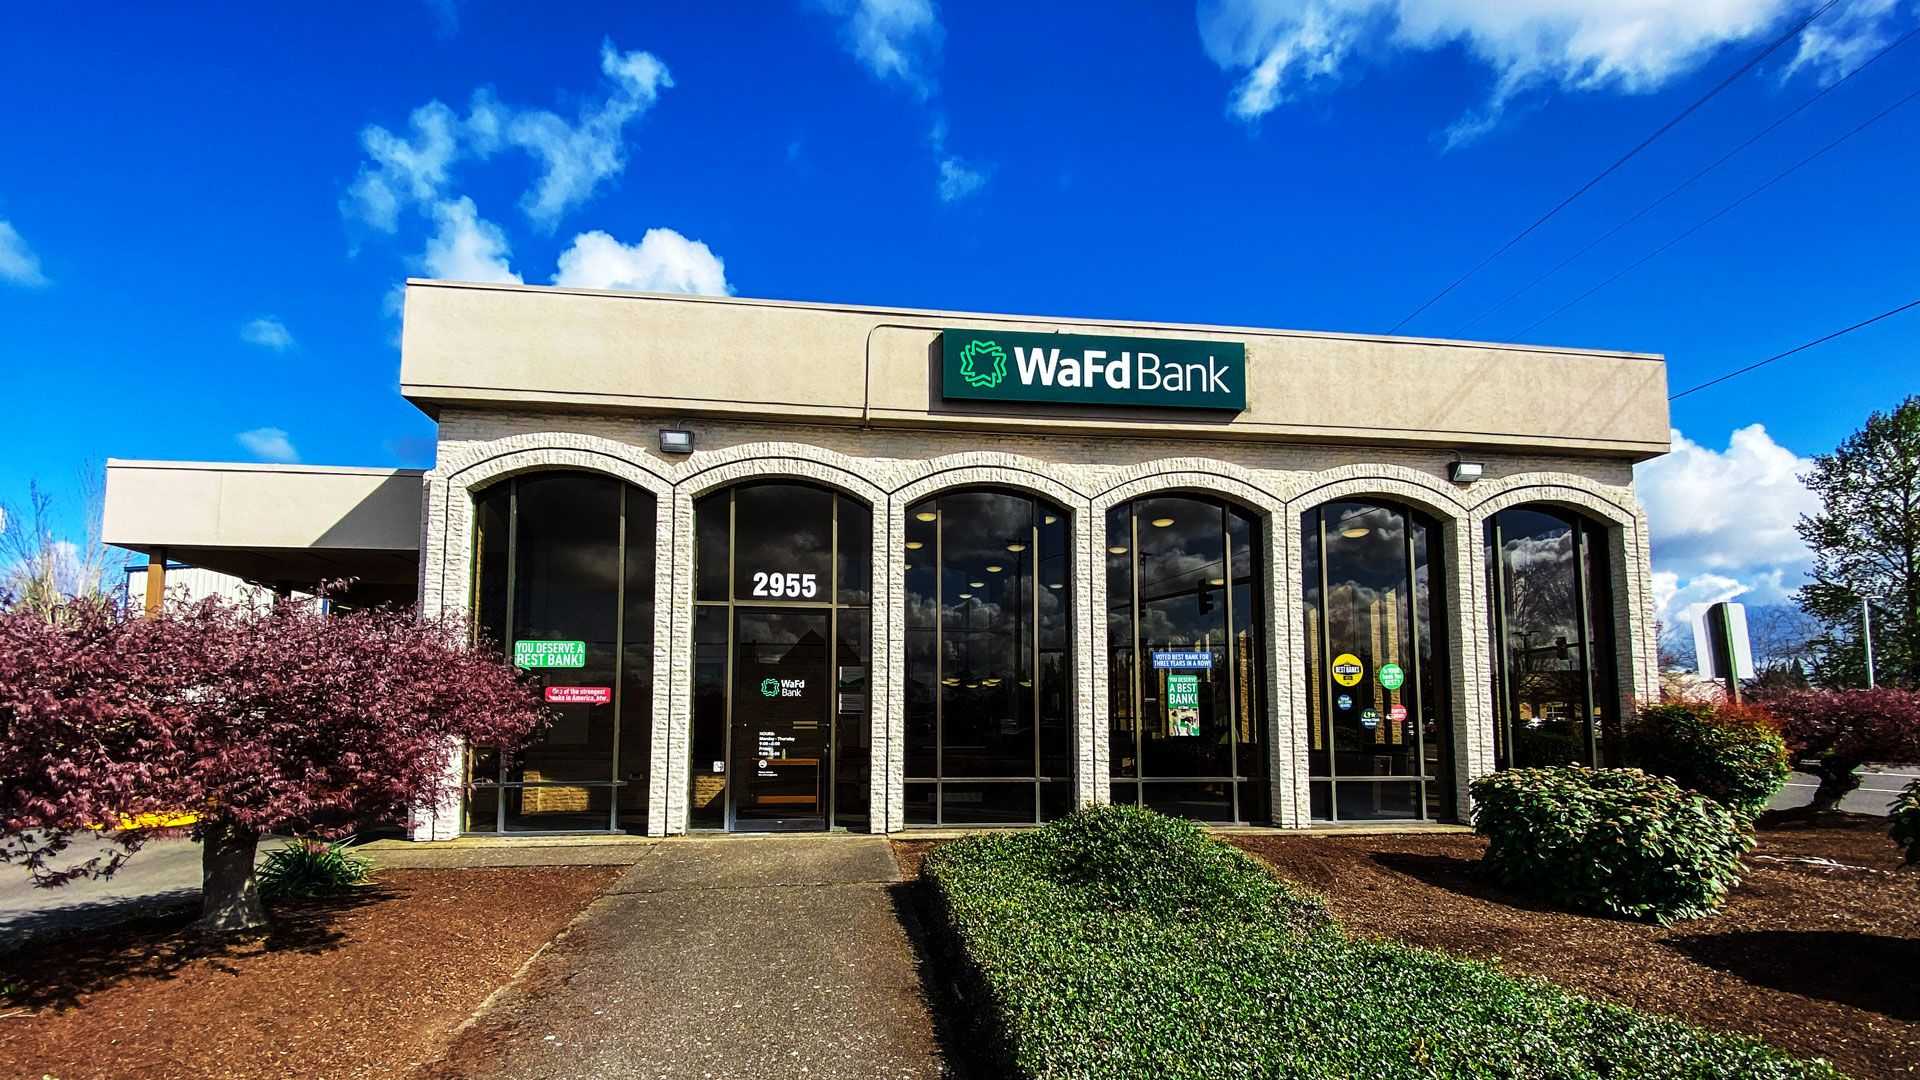 WaFd Bank in Salem, Oregon #1066 - Washington Federal.